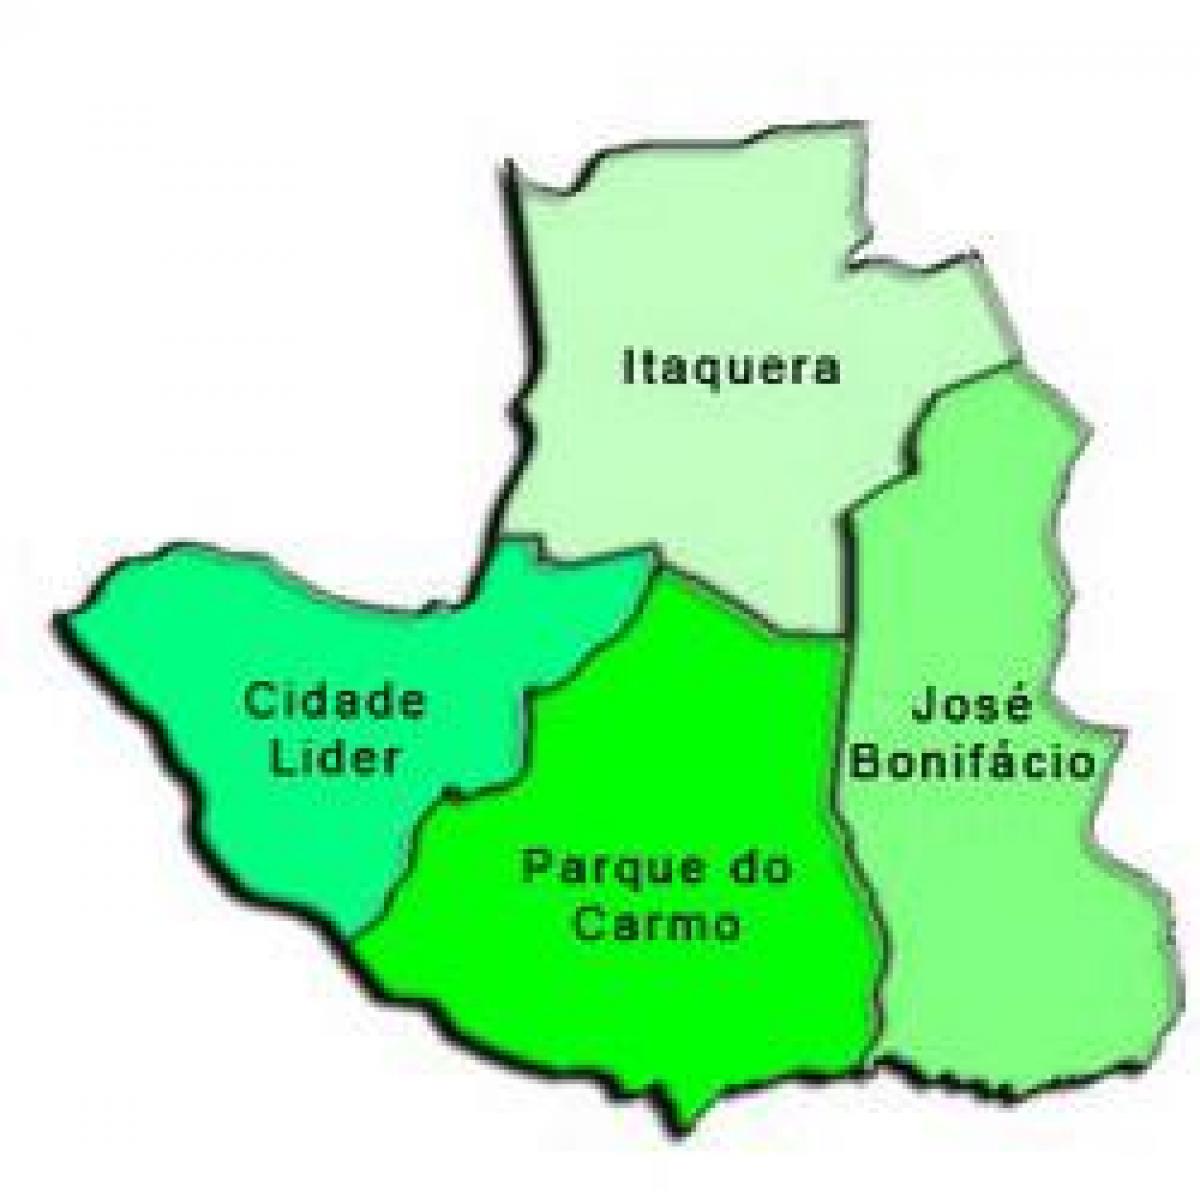 מפה של Itaquera תת-פריפקטורה